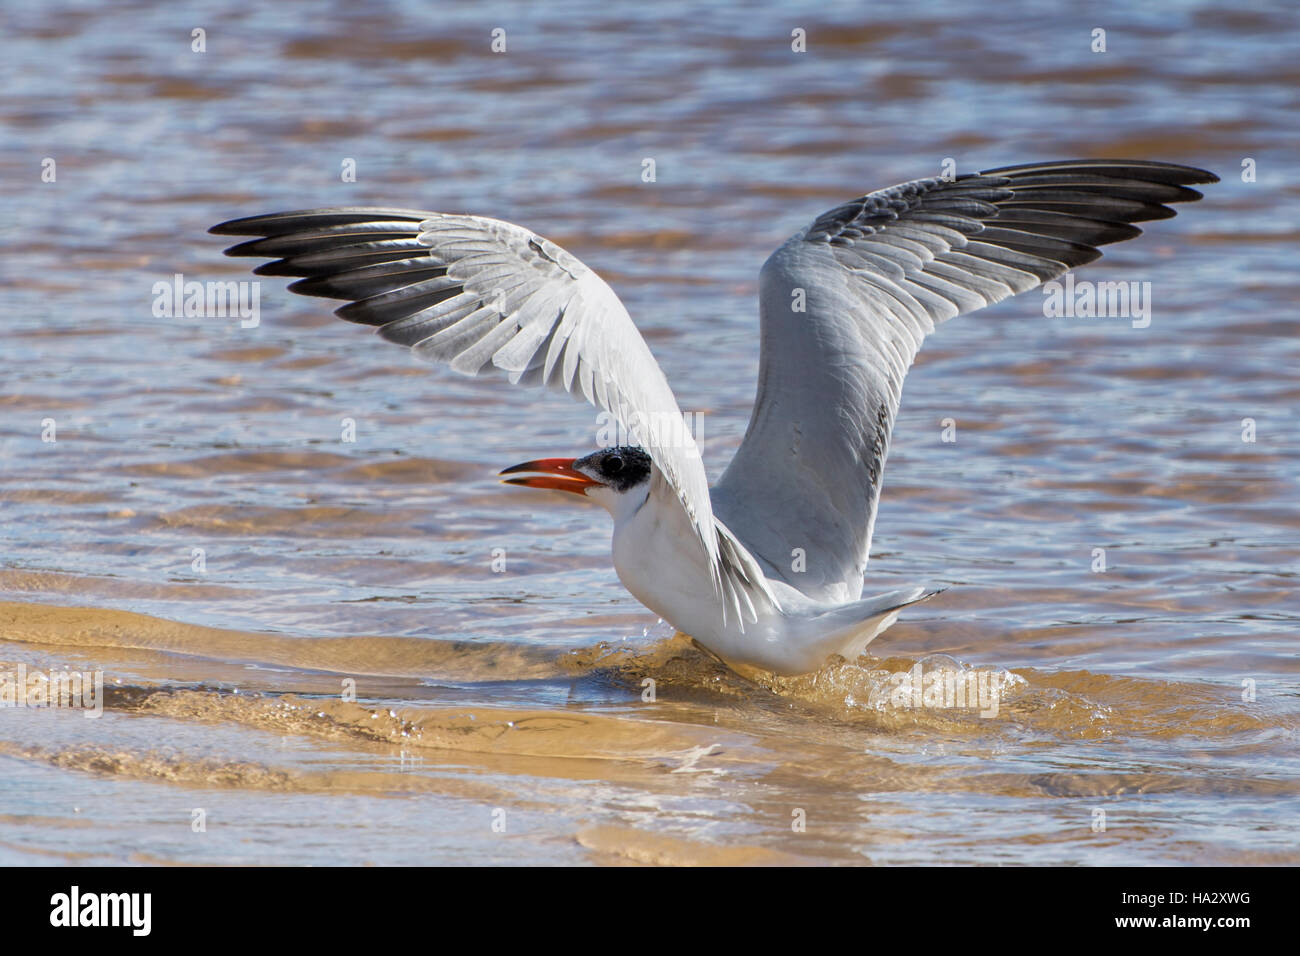 Crested Tern bird landing on beach, Australia Stock Photo